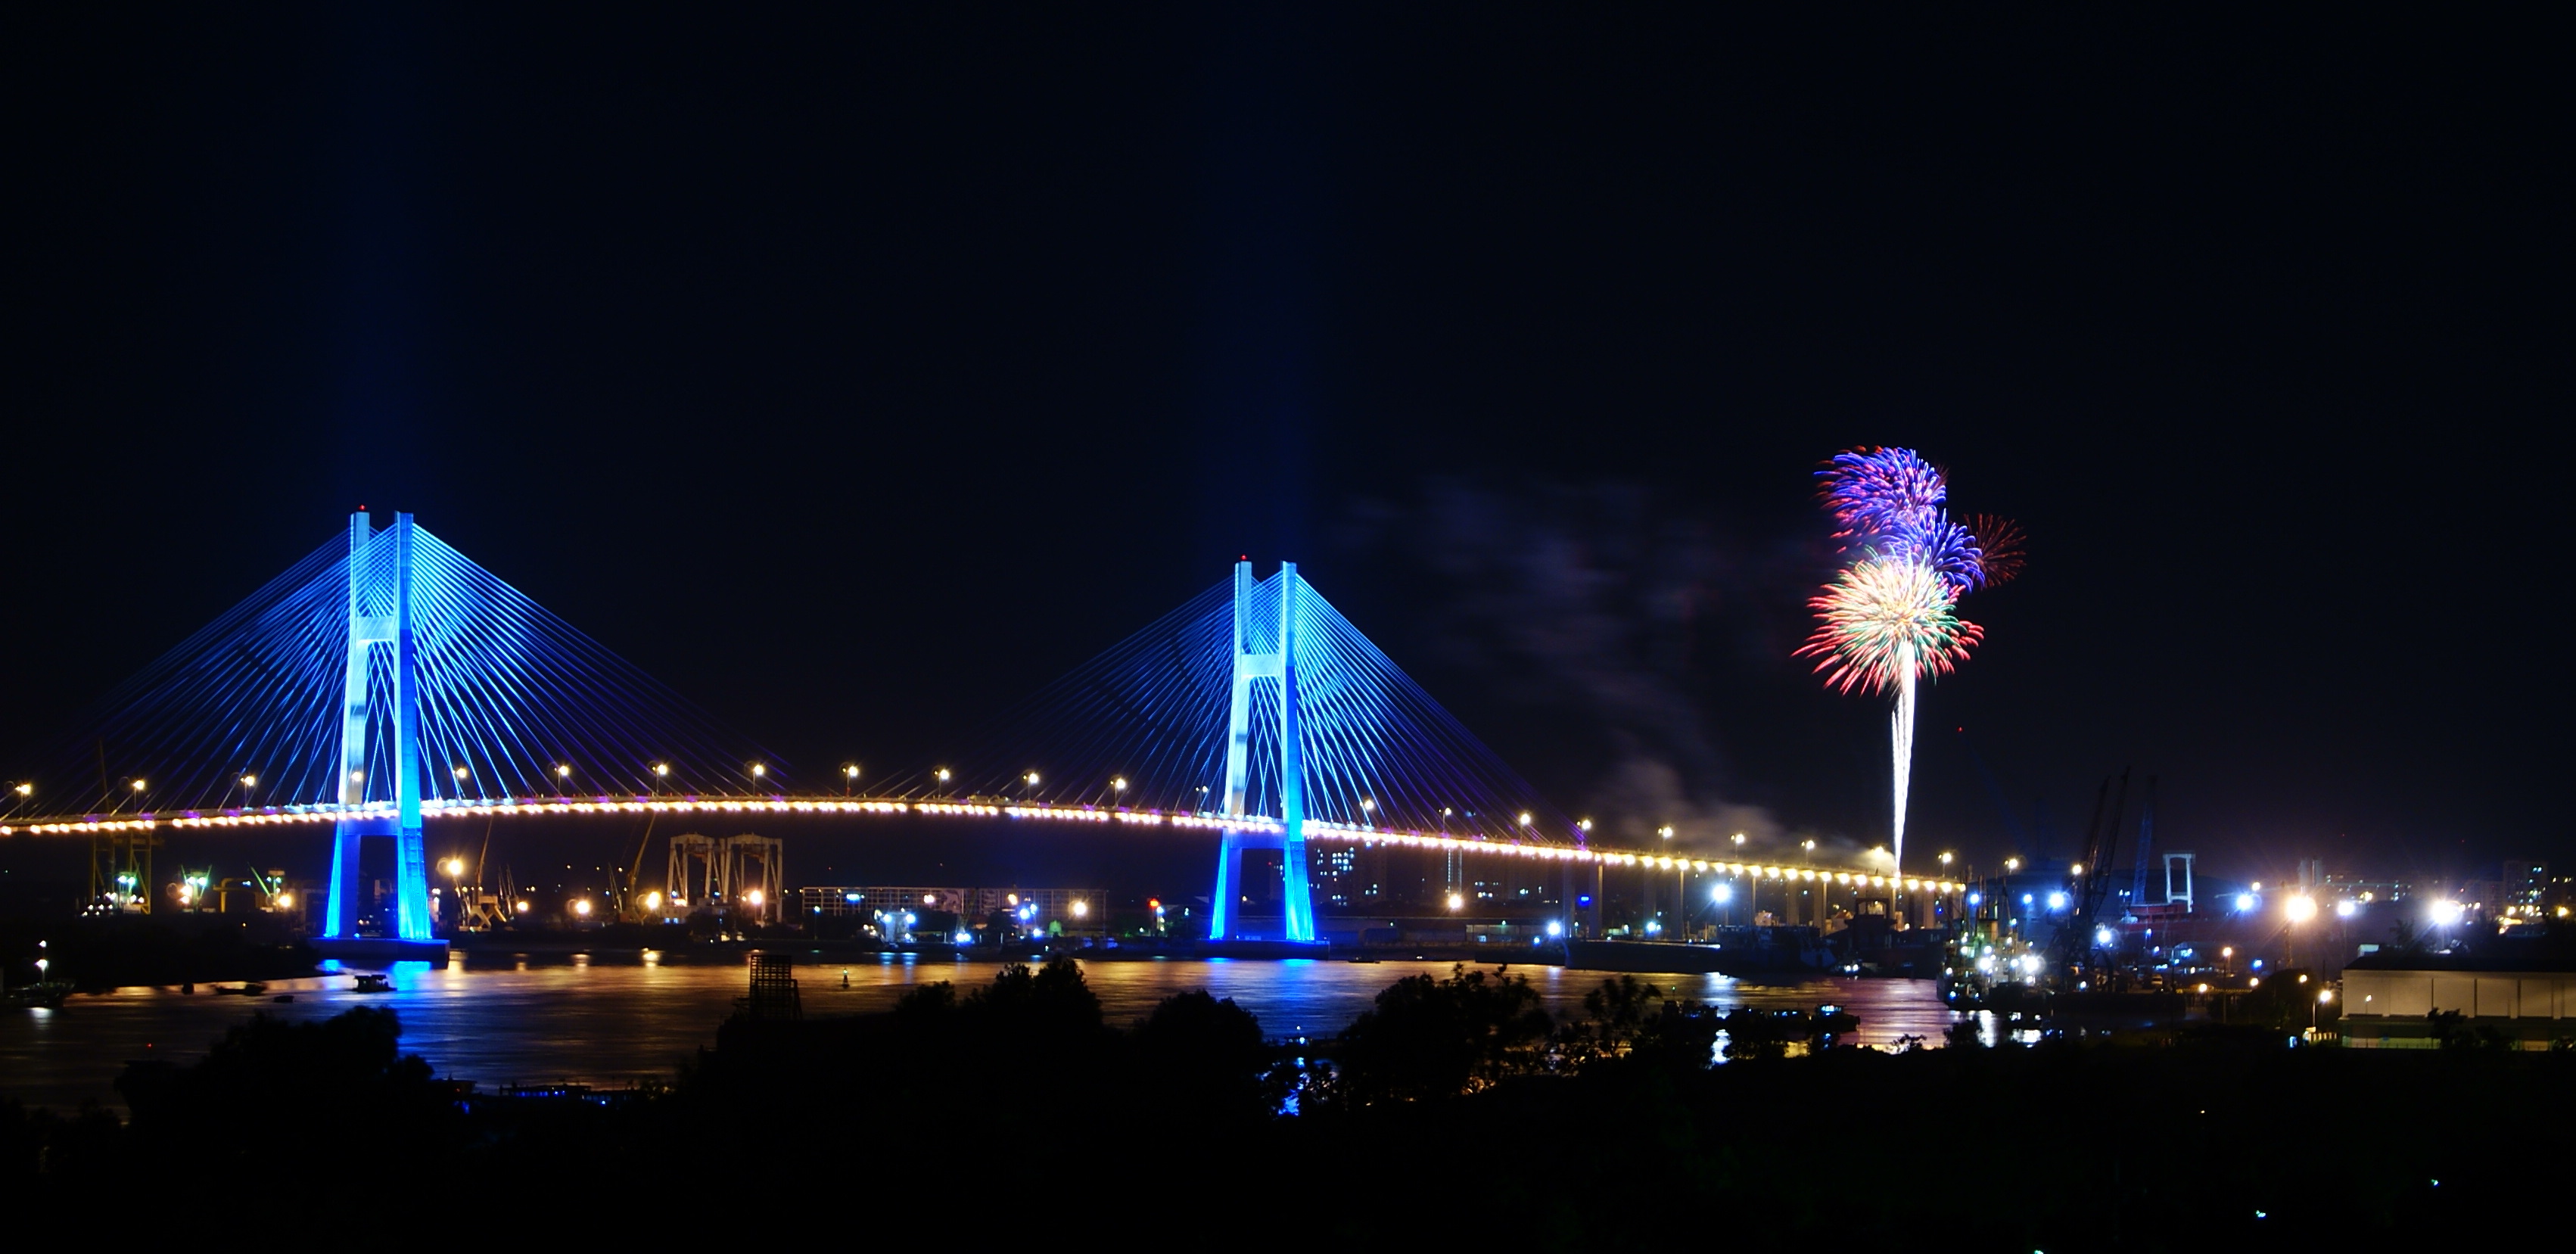 Hình ảnh cây cầu Phú Mỹ ở Sài Gòn đẹp